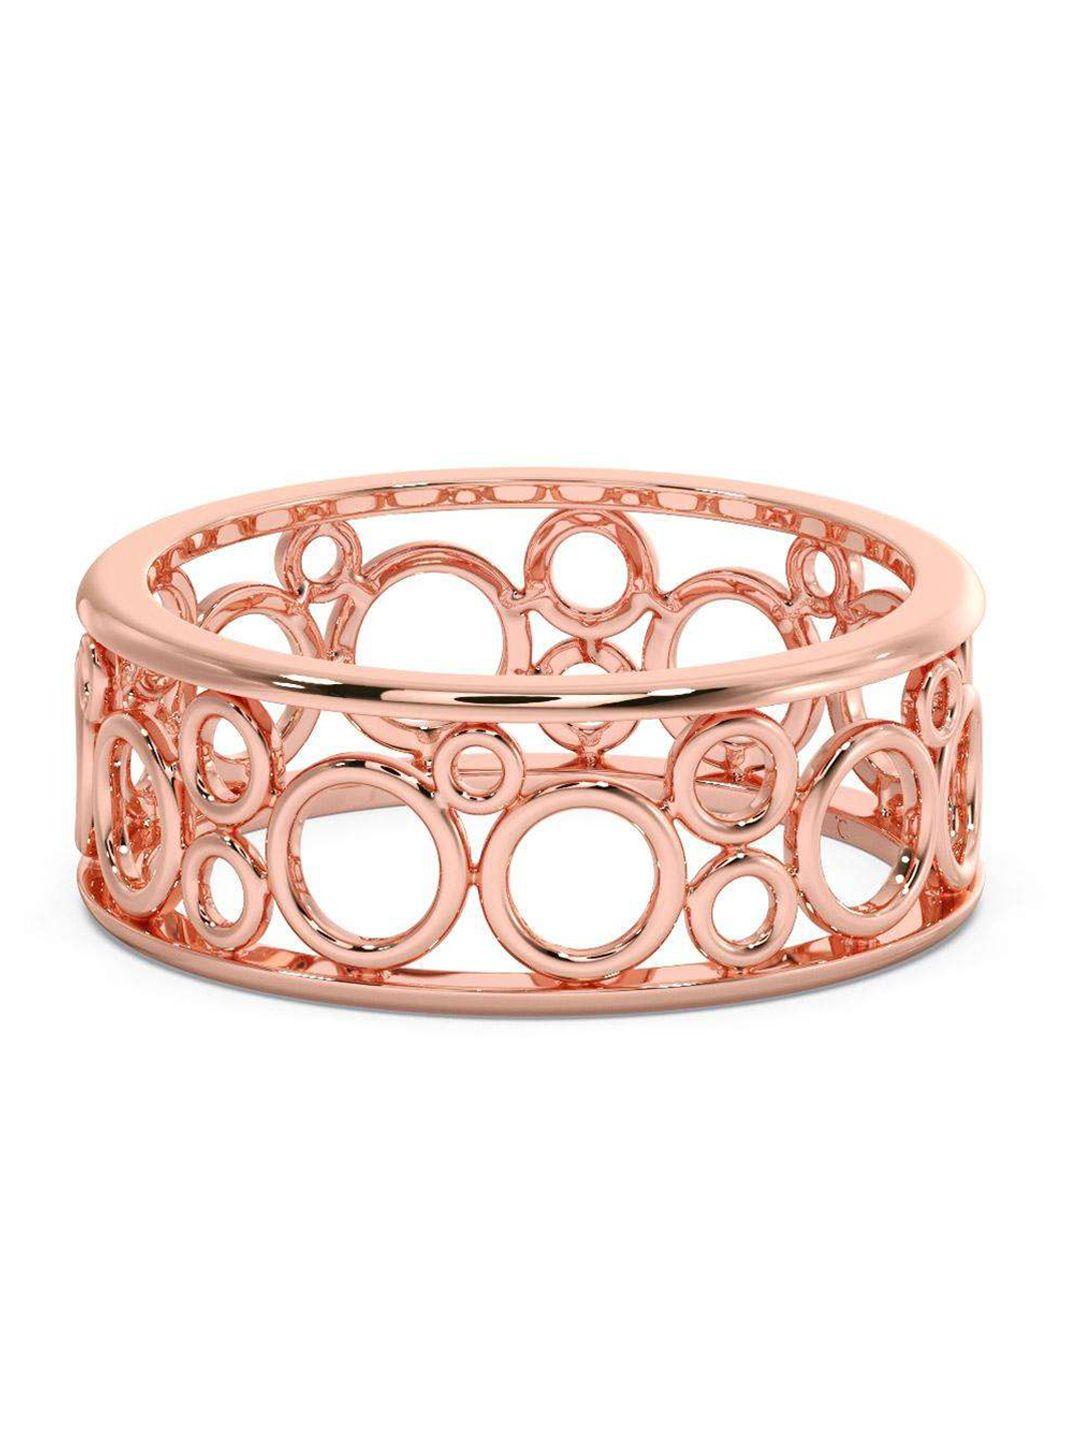 candere a kalyan jewellers company men 18kt bis hallmark rose gold finger ring -3.38gm